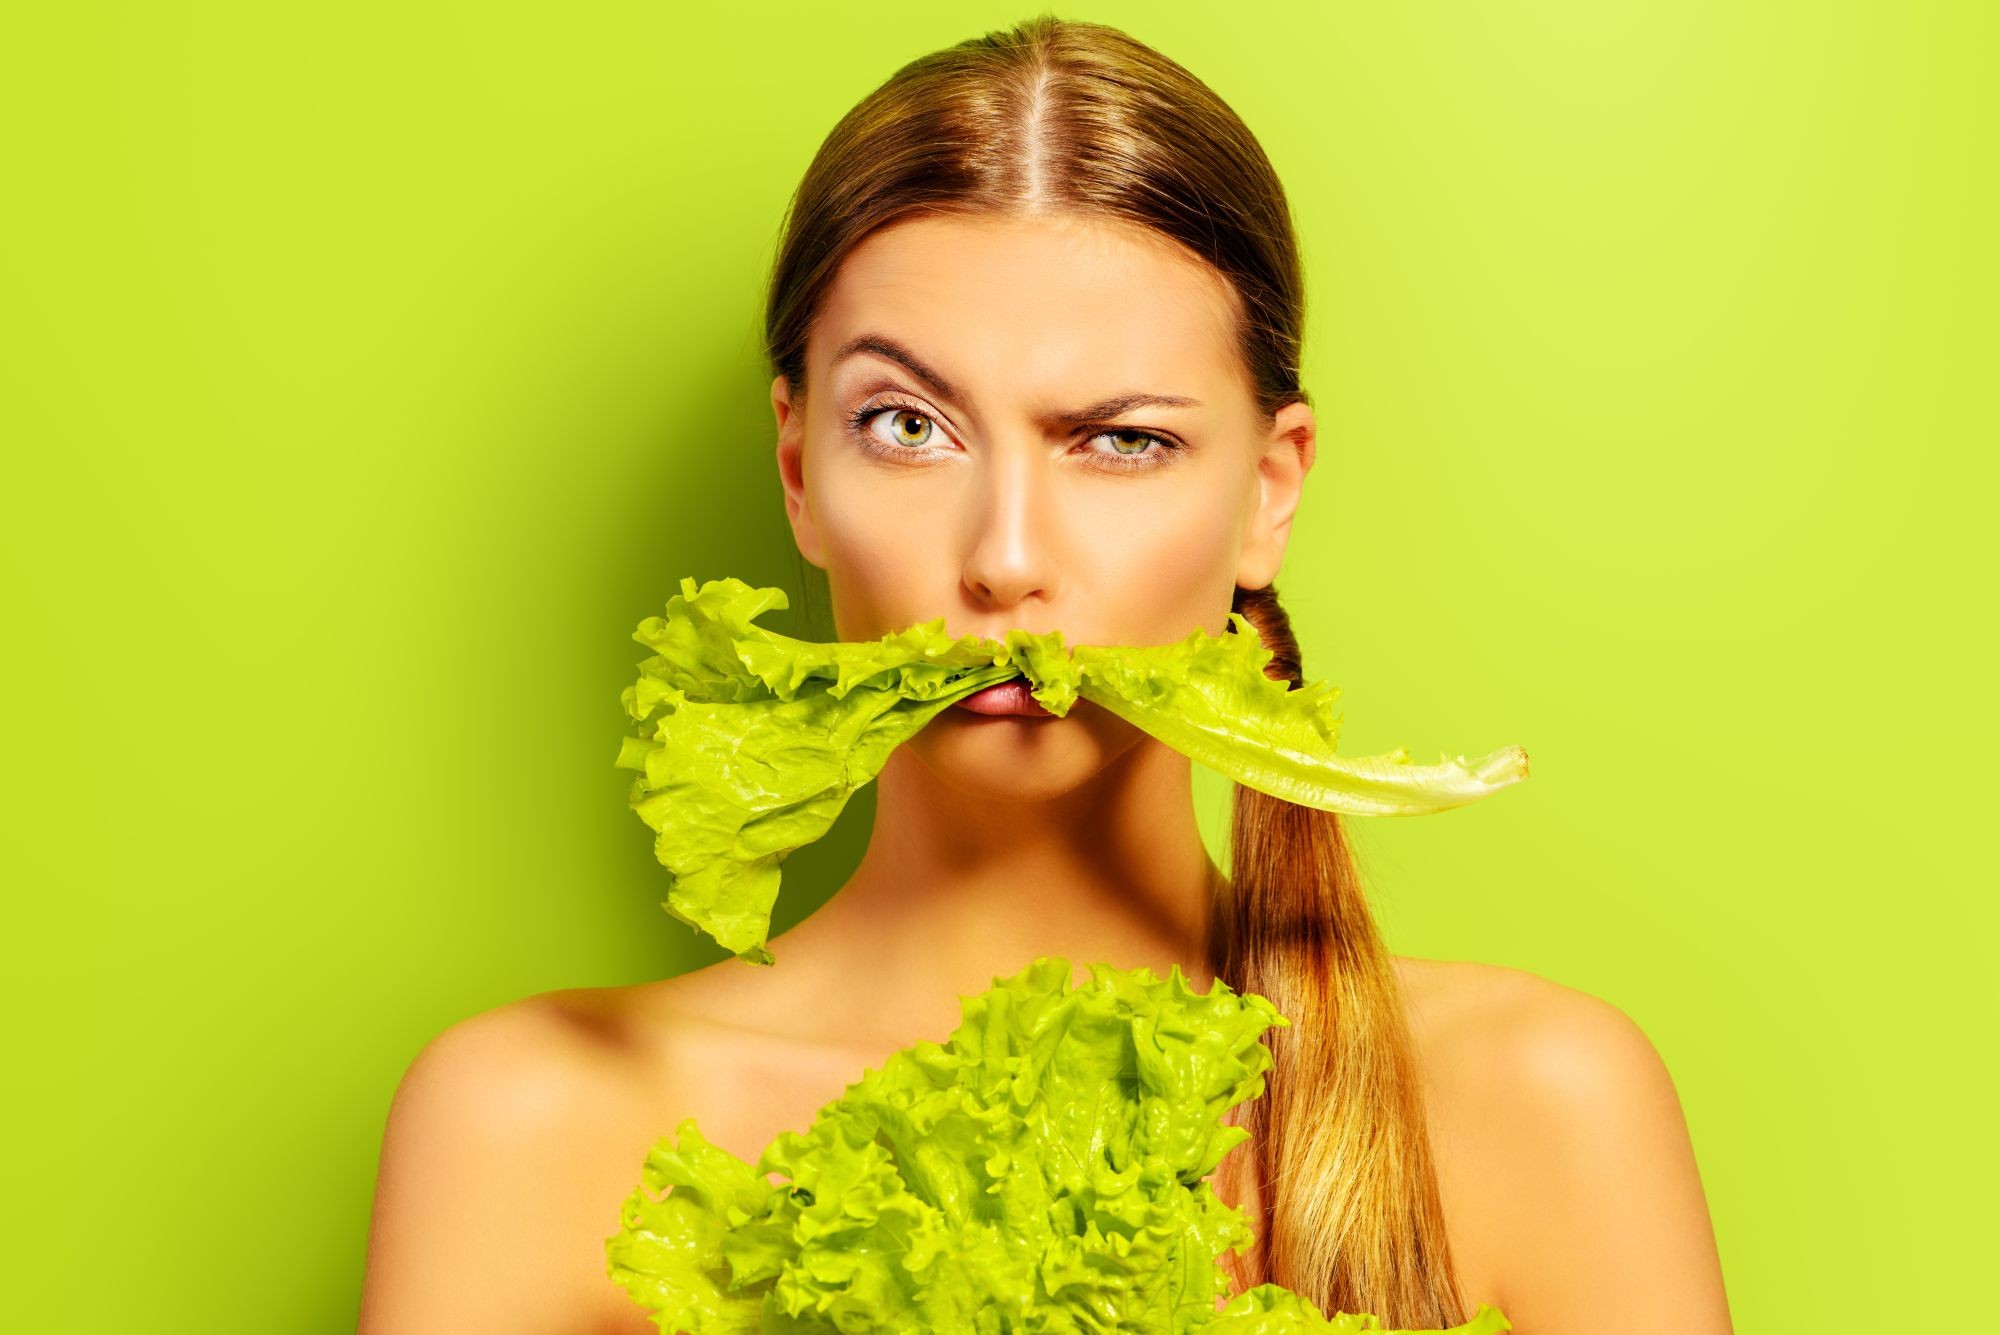 Czy wegetarianizm jest zdrowy? Prawdy i mity